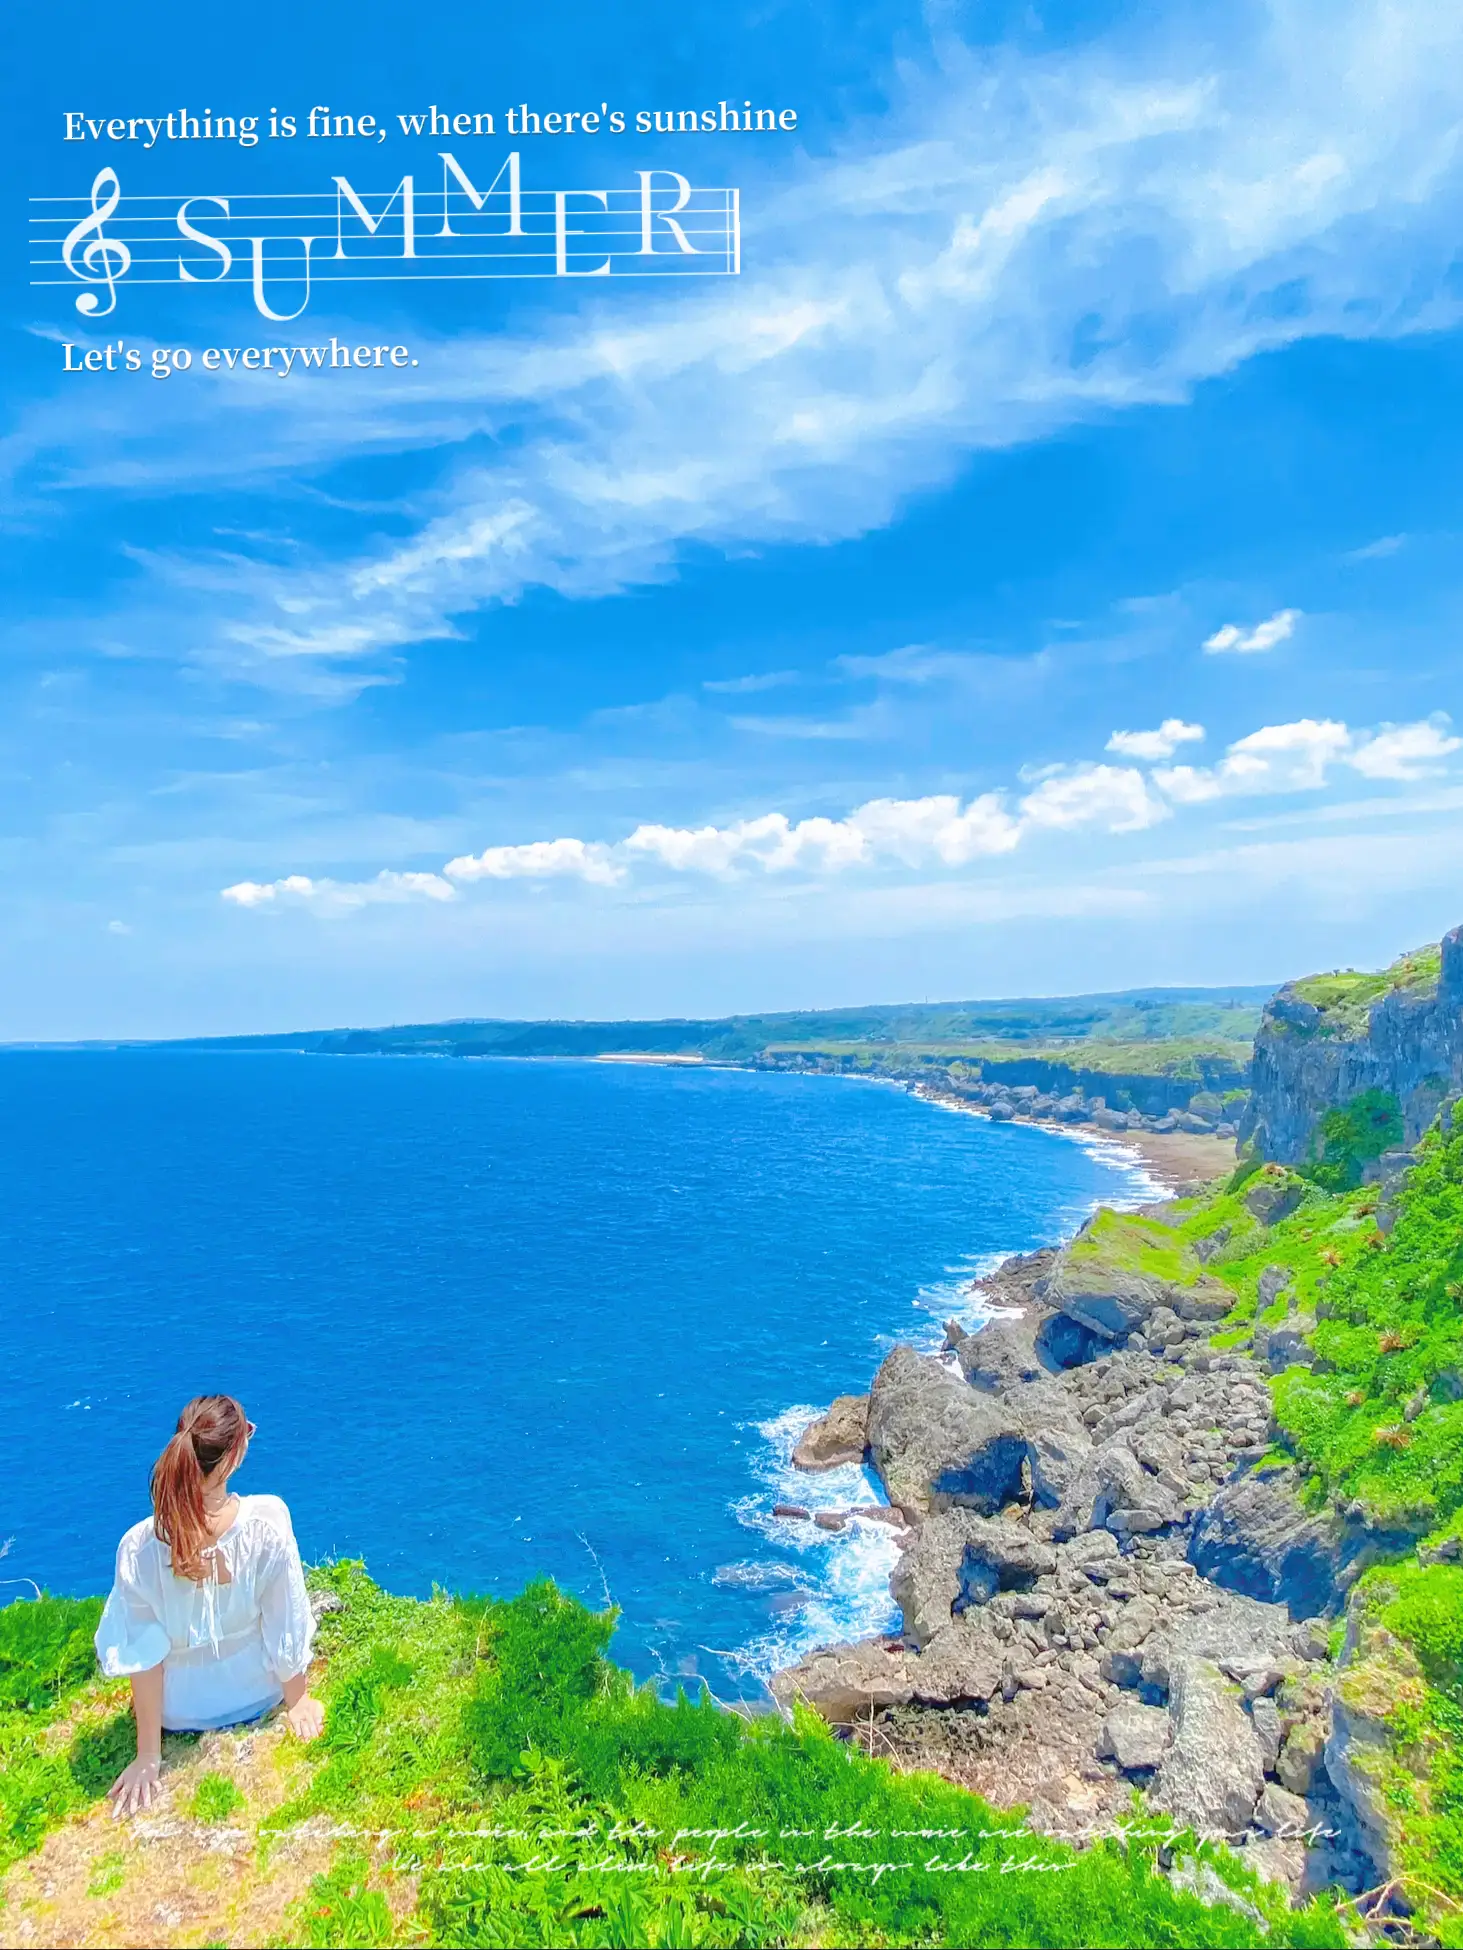 【沖永良部島】高さ51mの断崖絶壁絶景スポットの画像 (2枚目)